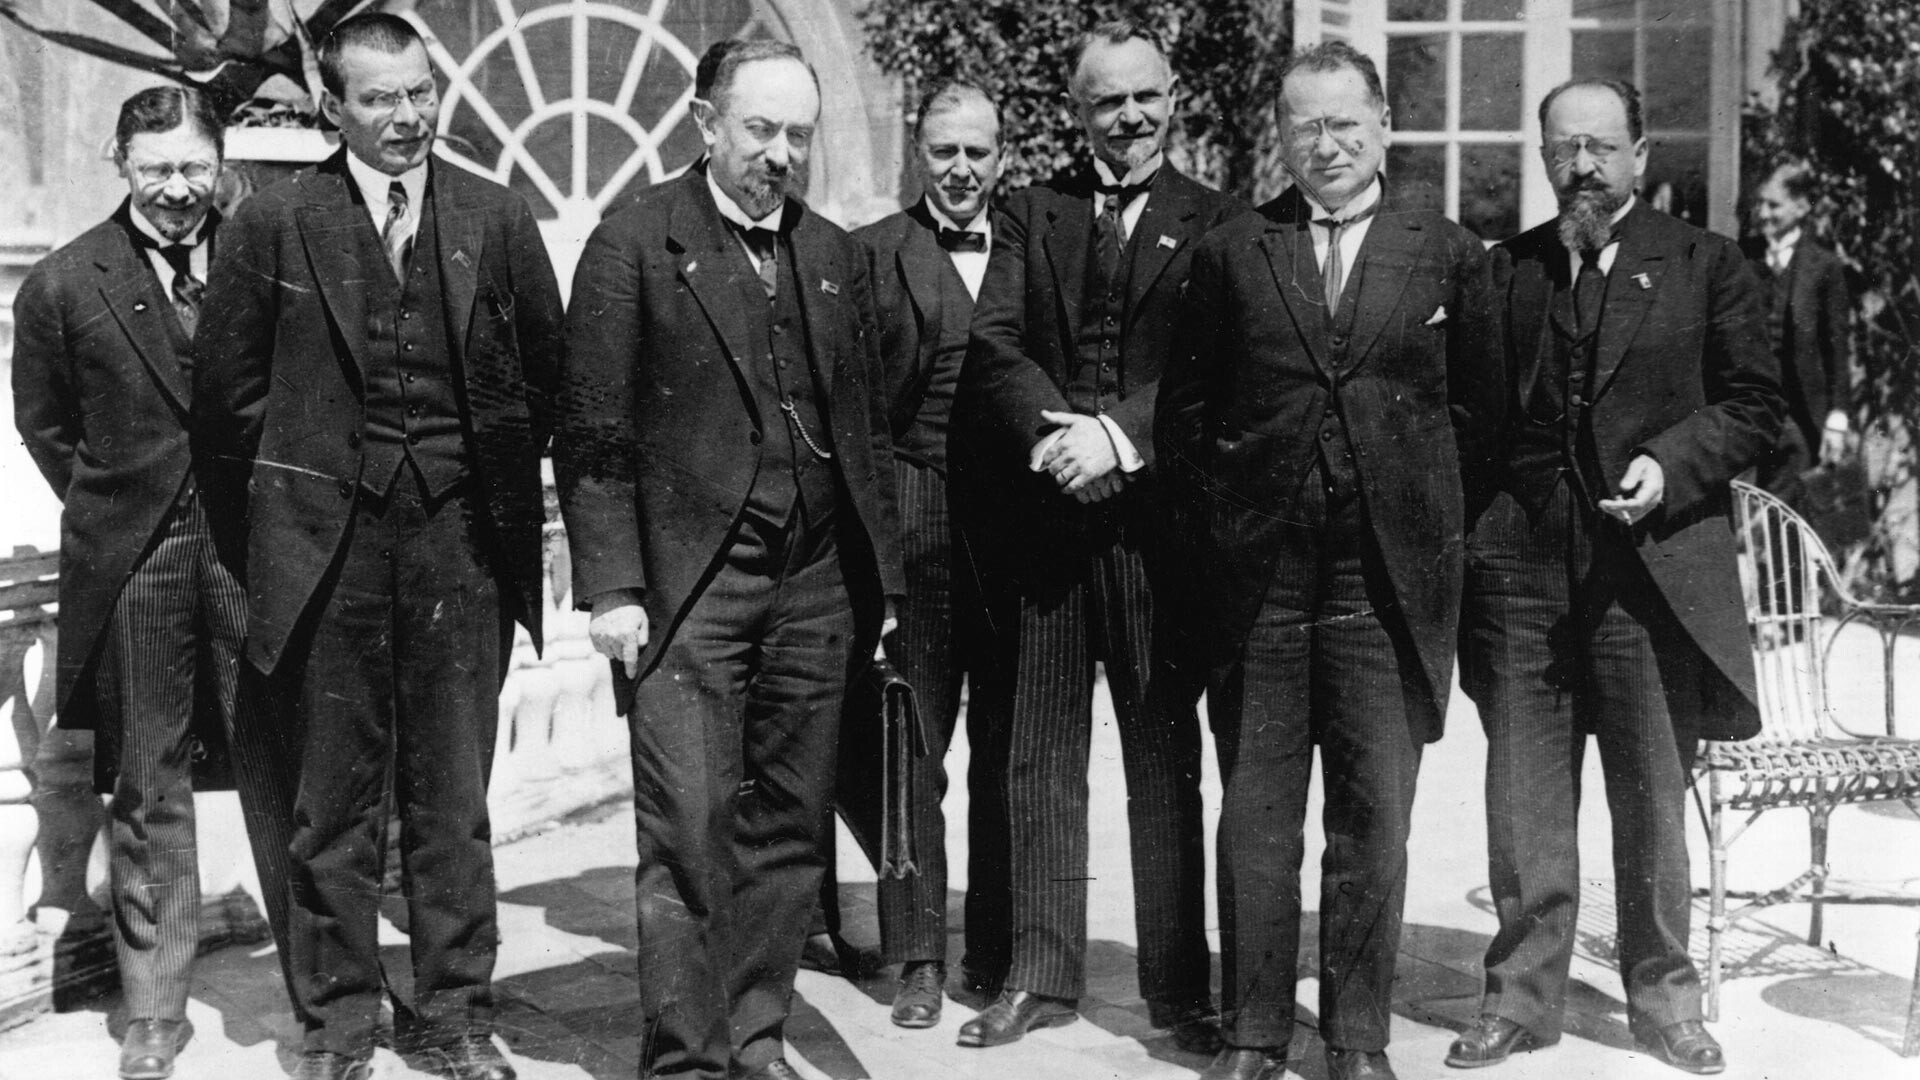 Russische Delegierte auf der Reparationskonferenz zwischen Deutschland und der Sowjetunion in Genua, auf der der Vertrag von Rapallo ausgehandelt wurde. Zu ihnen gehören Maxim Litwinow (1876 - 1951), Georgi Chicherin und Knassin.